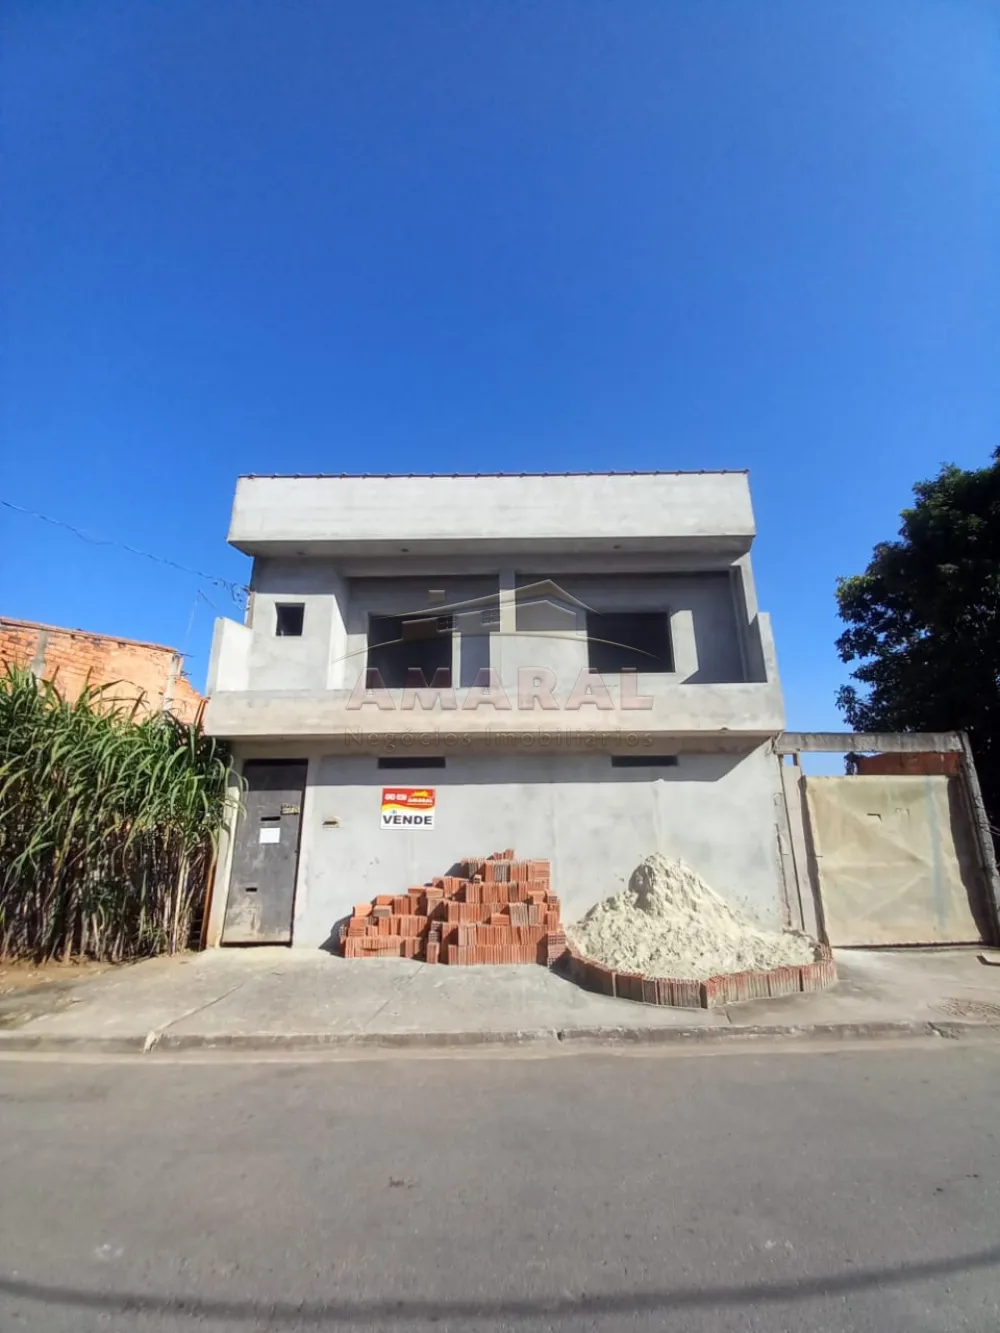 Comprar Casas / Sobrado em Suzano R$ 230.000,00 - Foto 2